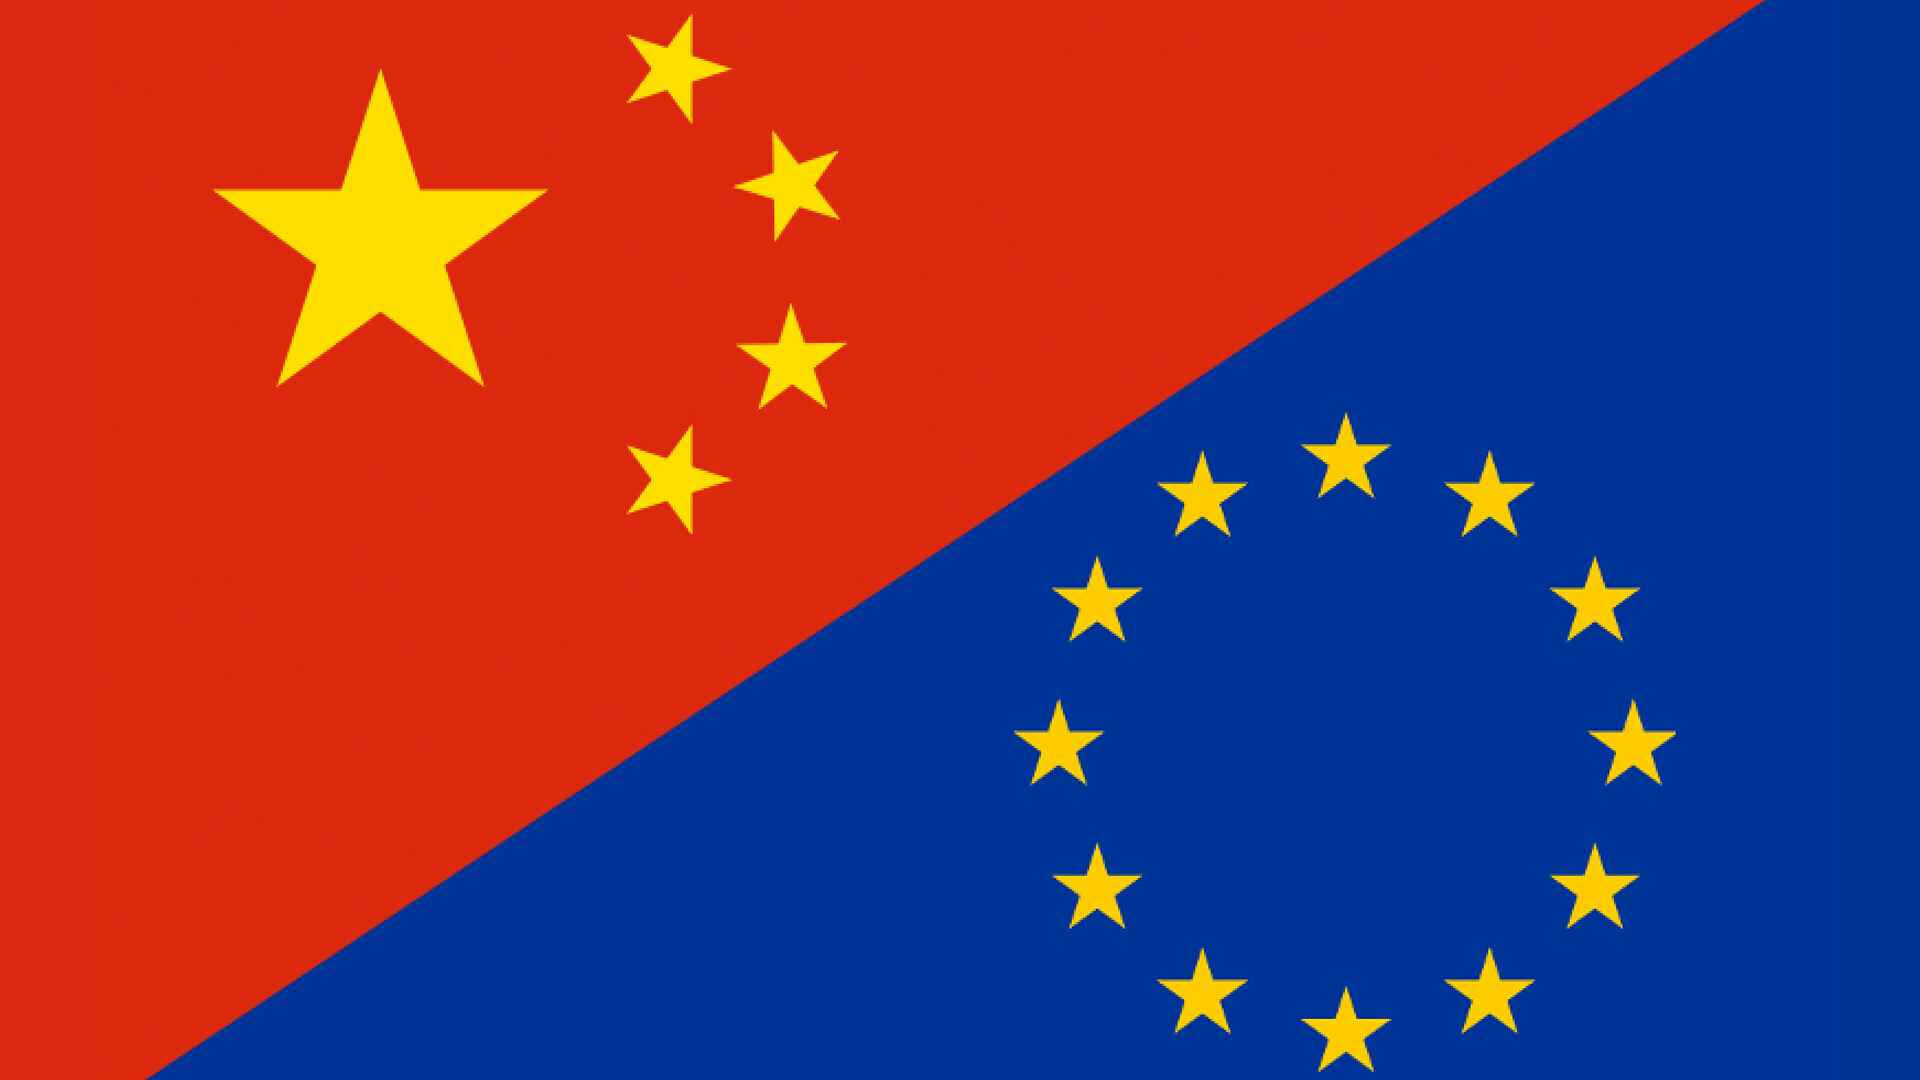 Симпатии дешевеют: Восточная Европа сворачивает сотрудничество с Китаем